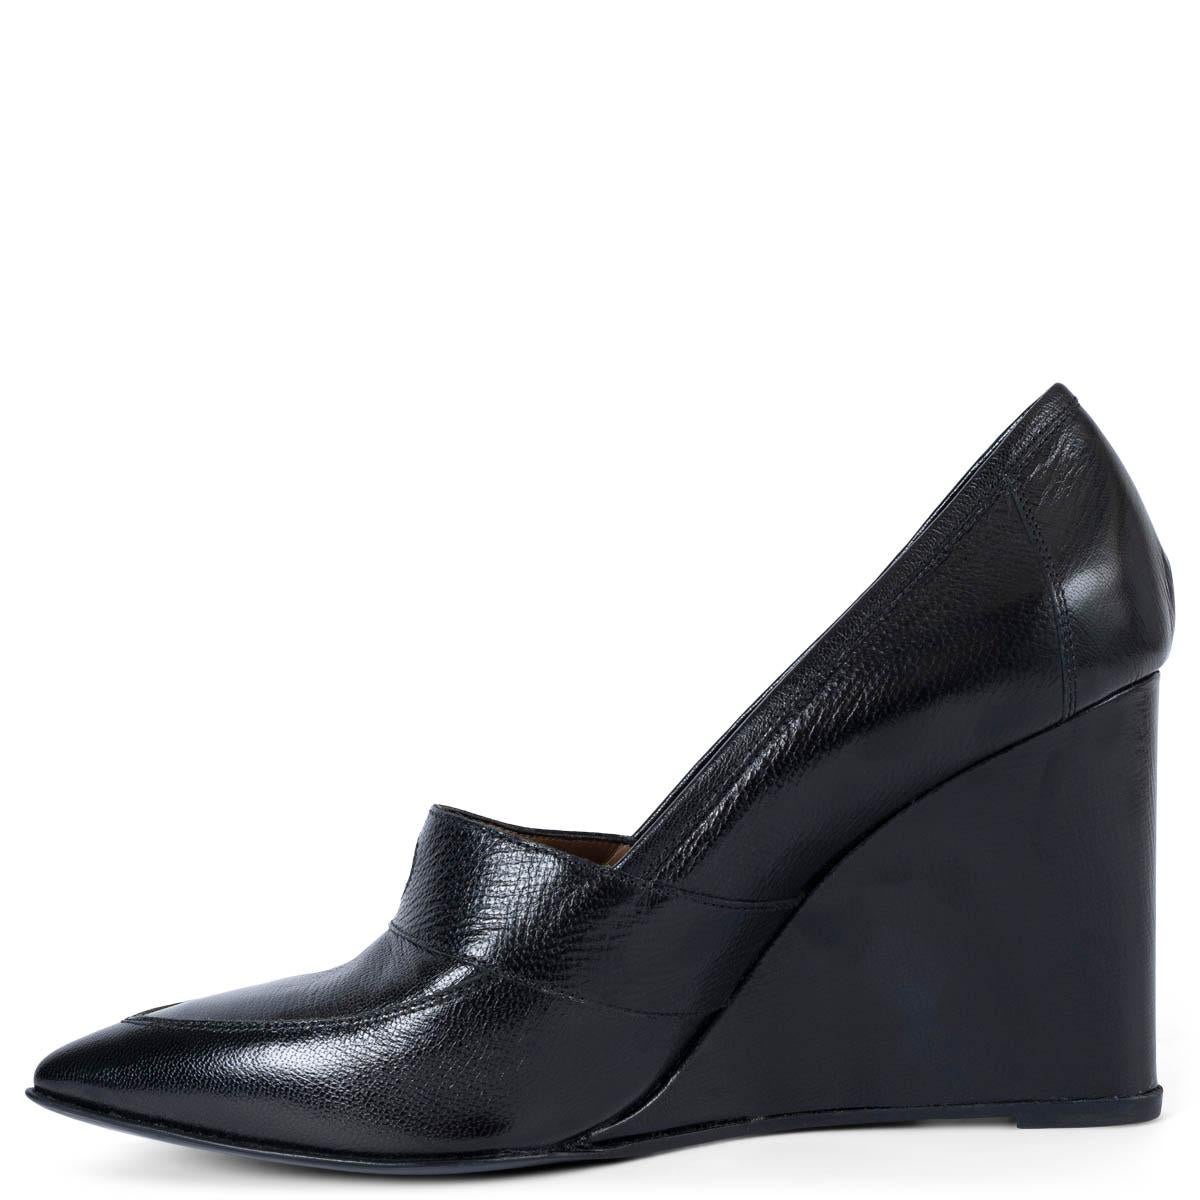 HERMES cuir noir POINTED TOE TOE WEDGE Pumps Shoes 39 Excellent état - En vente à Zürich, CH